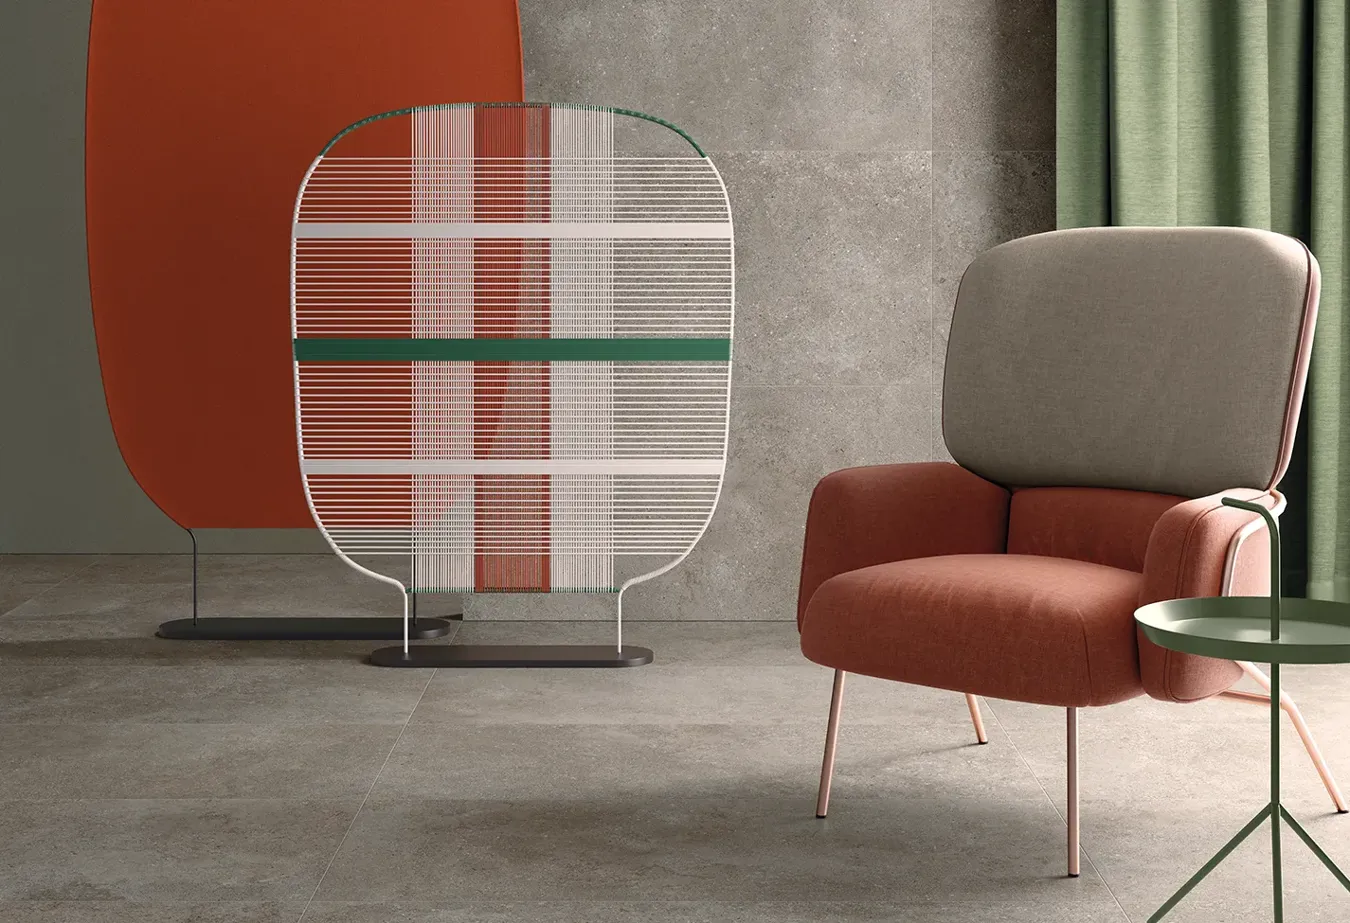 Pièce contemporaine avec carrelage Collection Brystone couleur Avana, paravent artistique et fauteuil design.